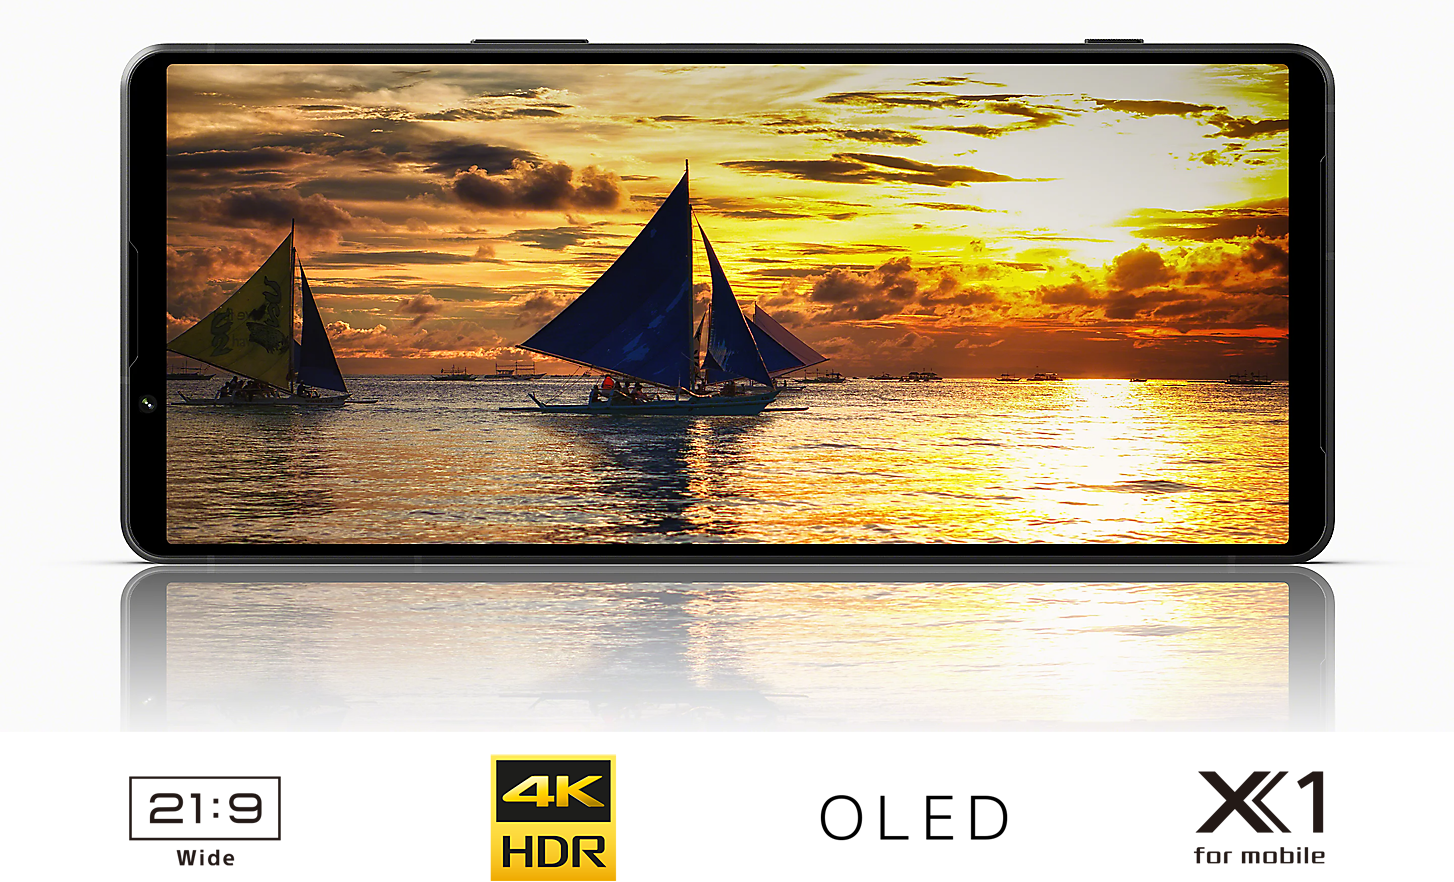 Un Xperia 1 V montrant un voilier au coucher du soleil avec, en dessous, les logos : grand écran 21:9, 4K HDR, OLED et X1 for mobile